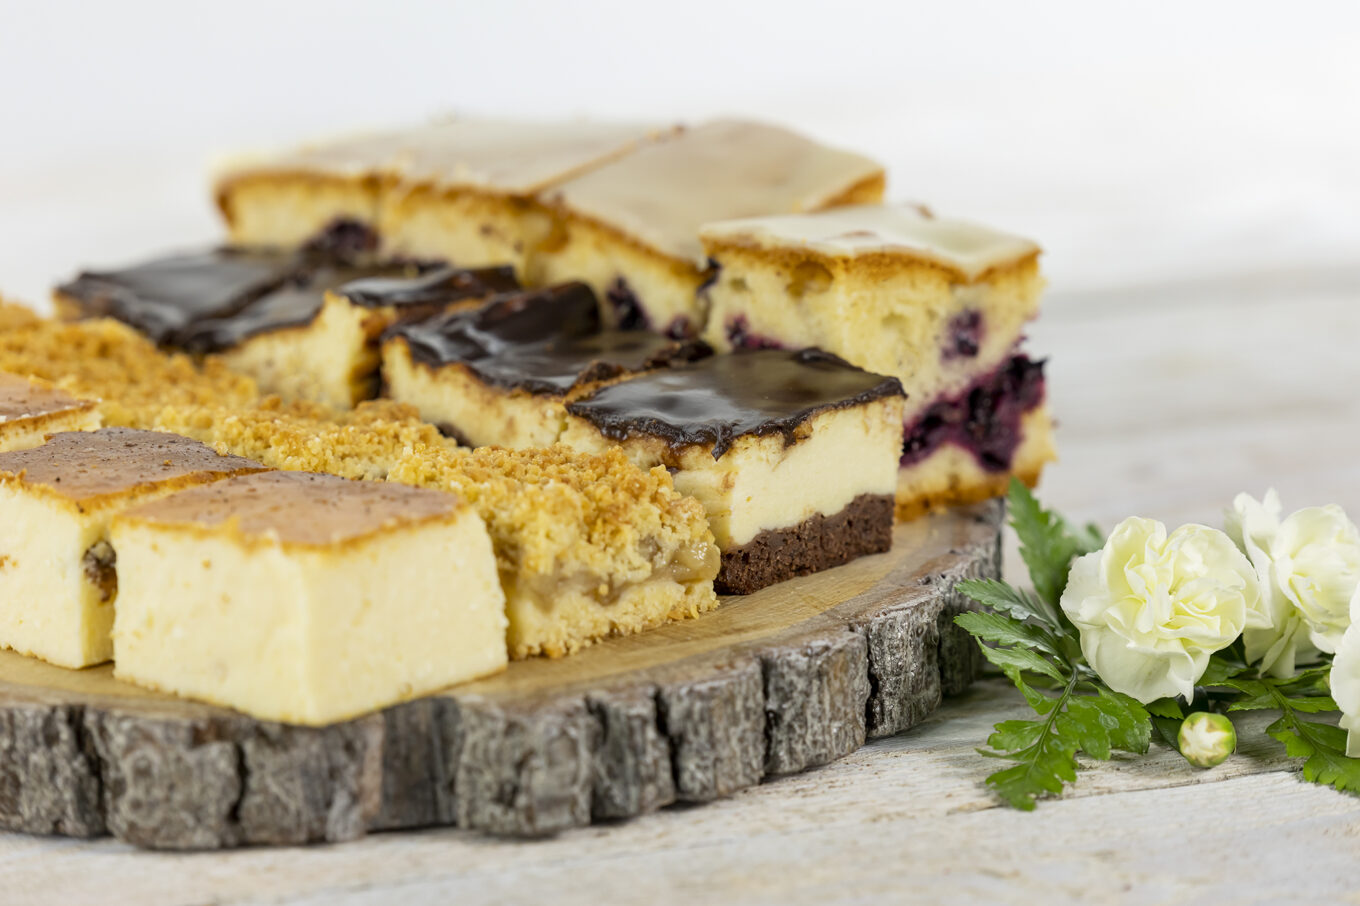 ciasta domowe komunia Cukiernia Jacek Placek to synonim smaku domowych ciast z naturalnych produktów.